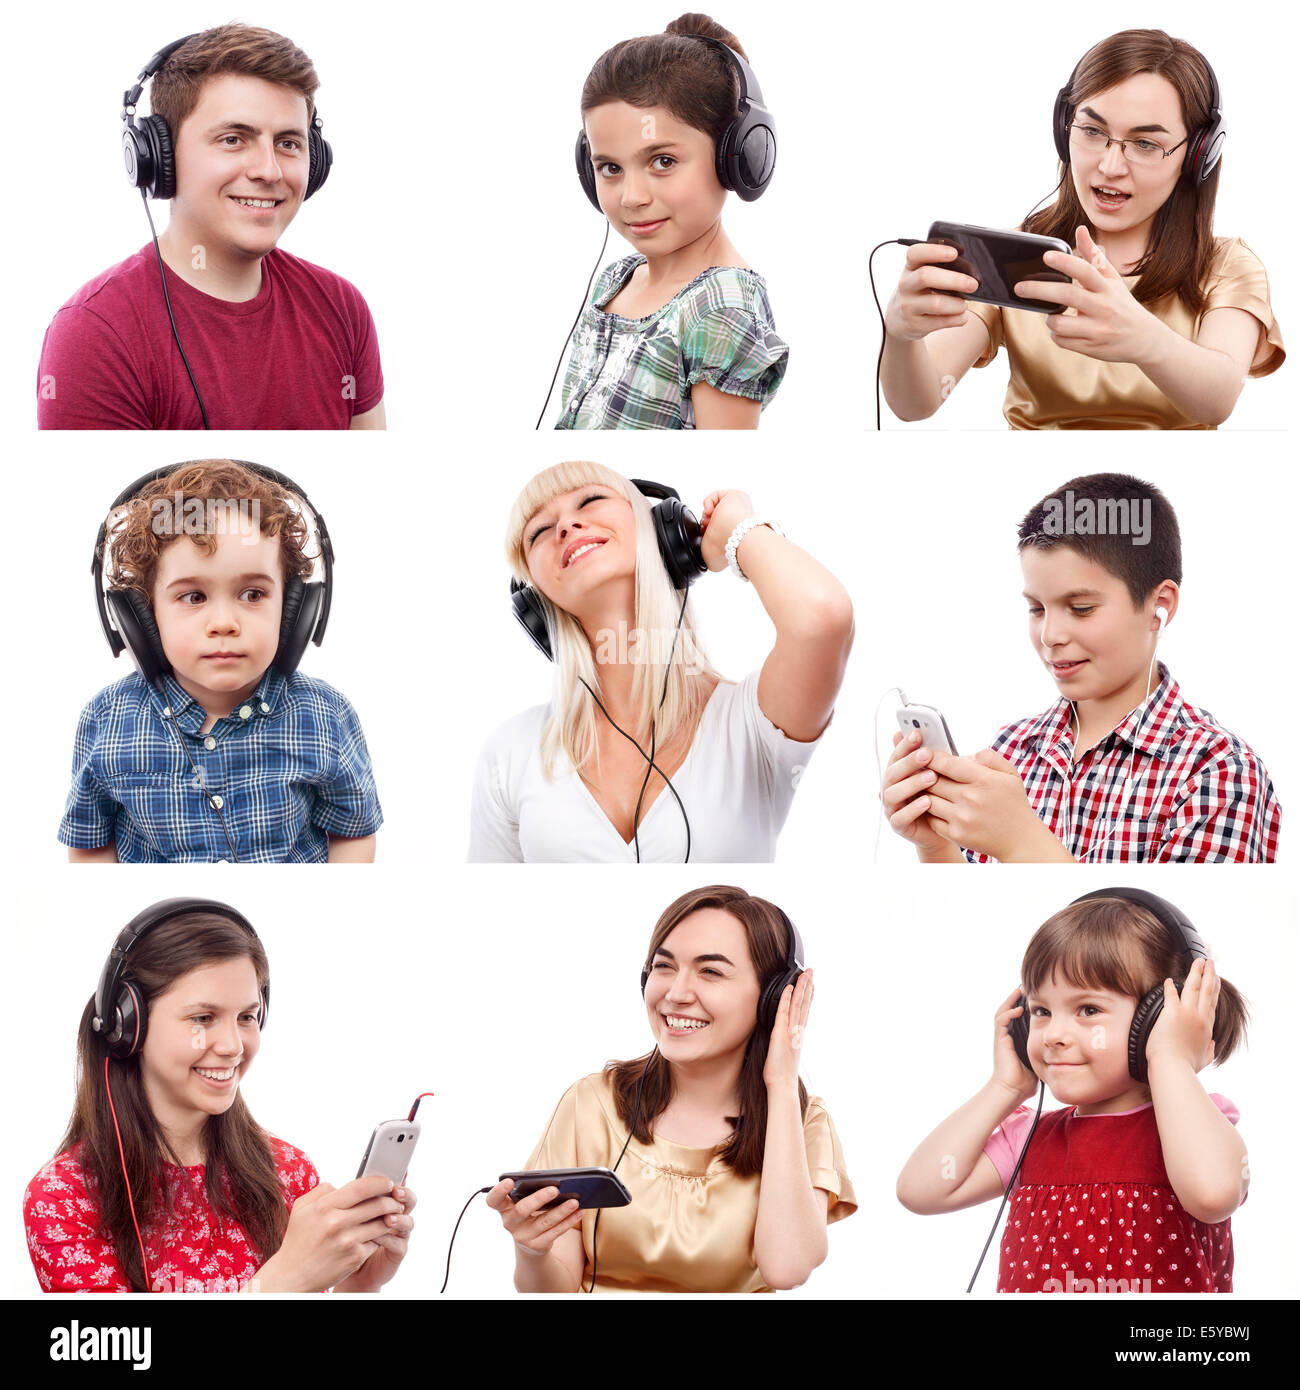 Porträts von verschiedenen lächelnden Menschen, die etwas über Kopfhörer hören Stockfoto